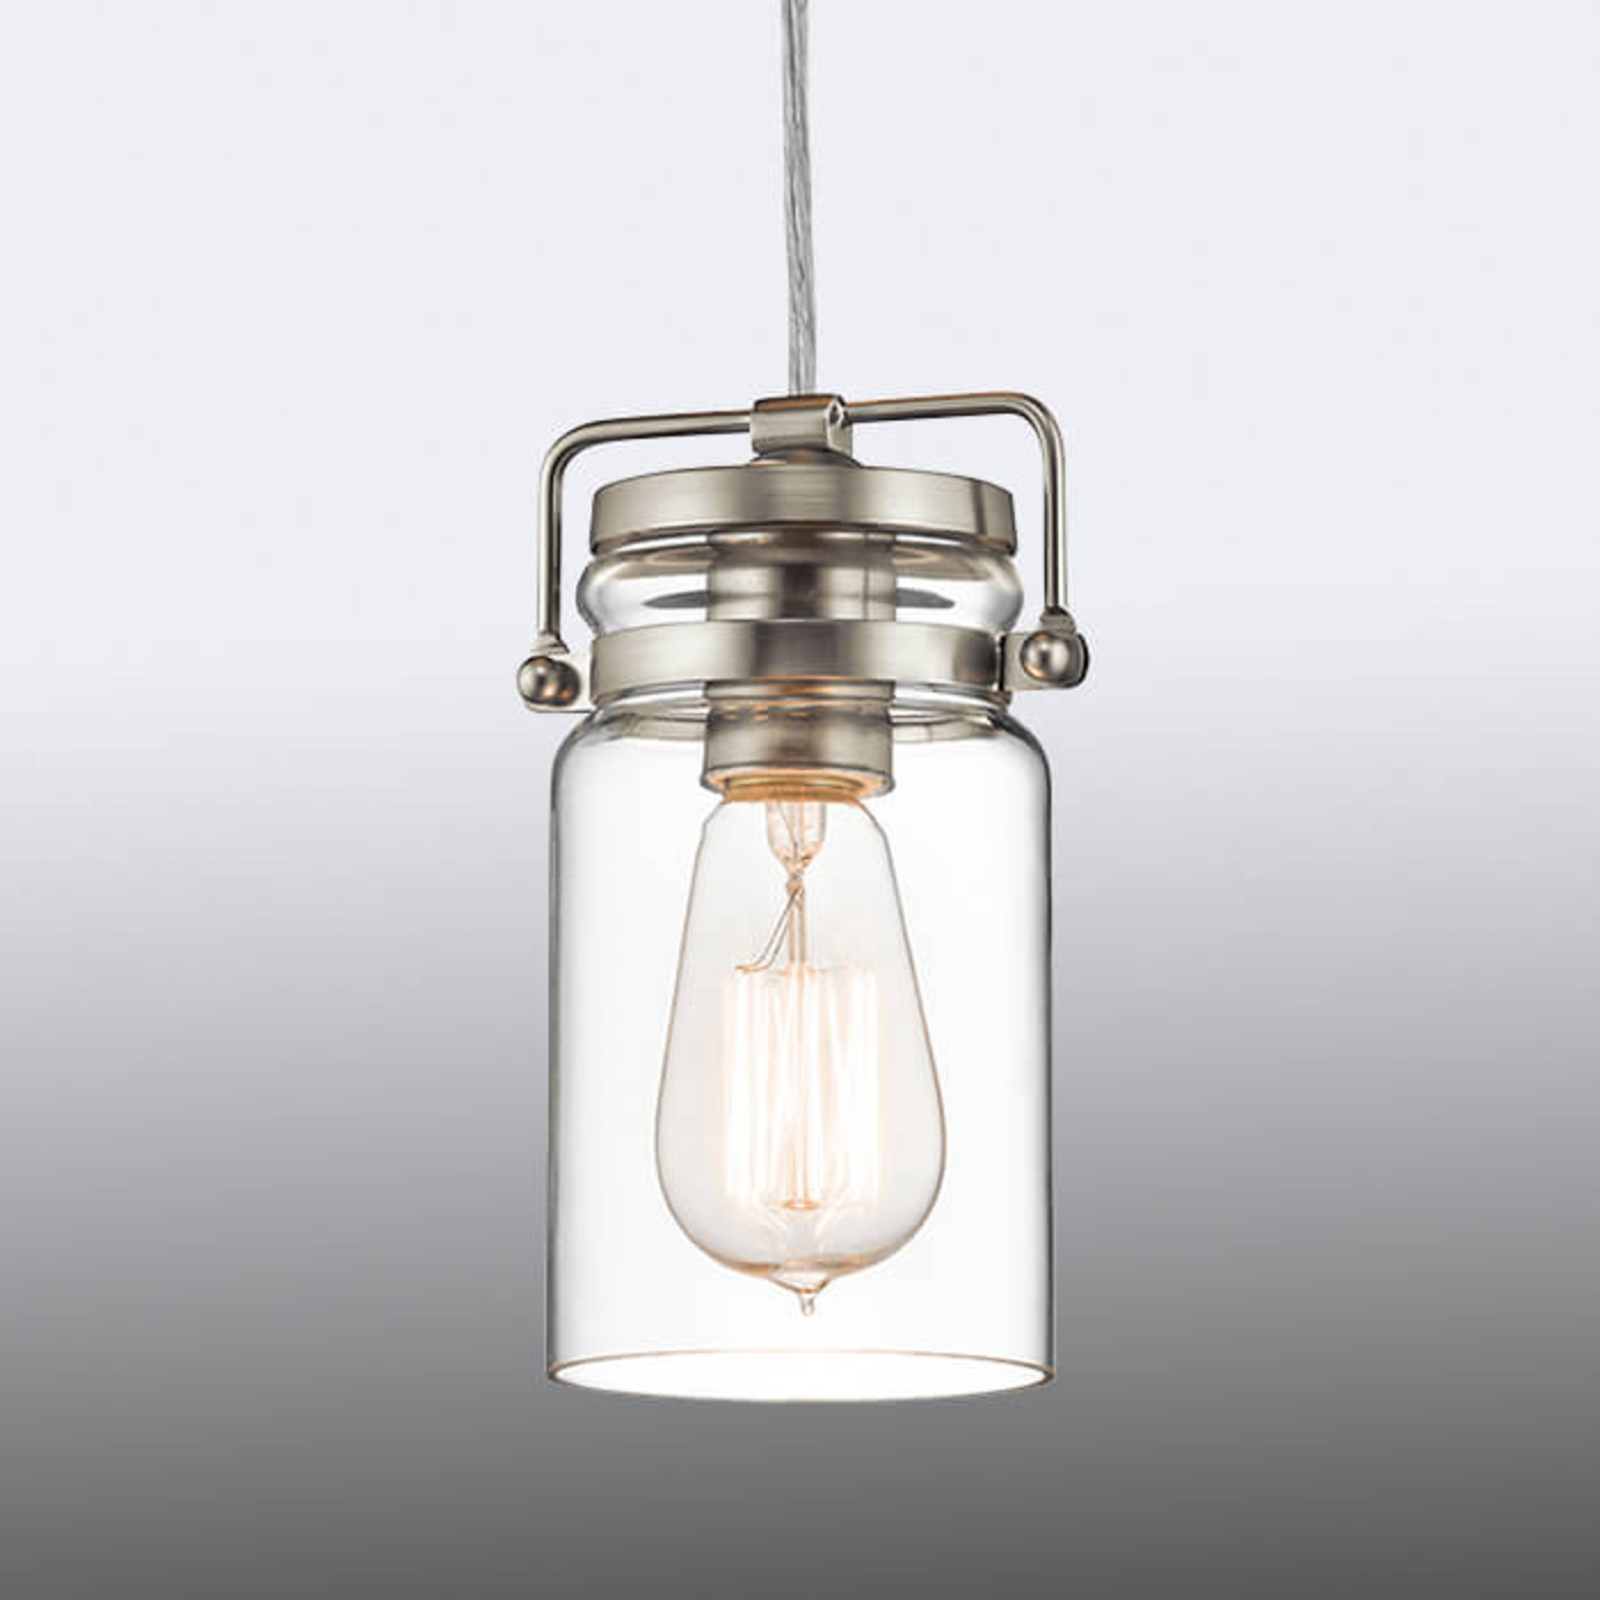 Nowy design, lampa wisząca Brinley w stylu retro